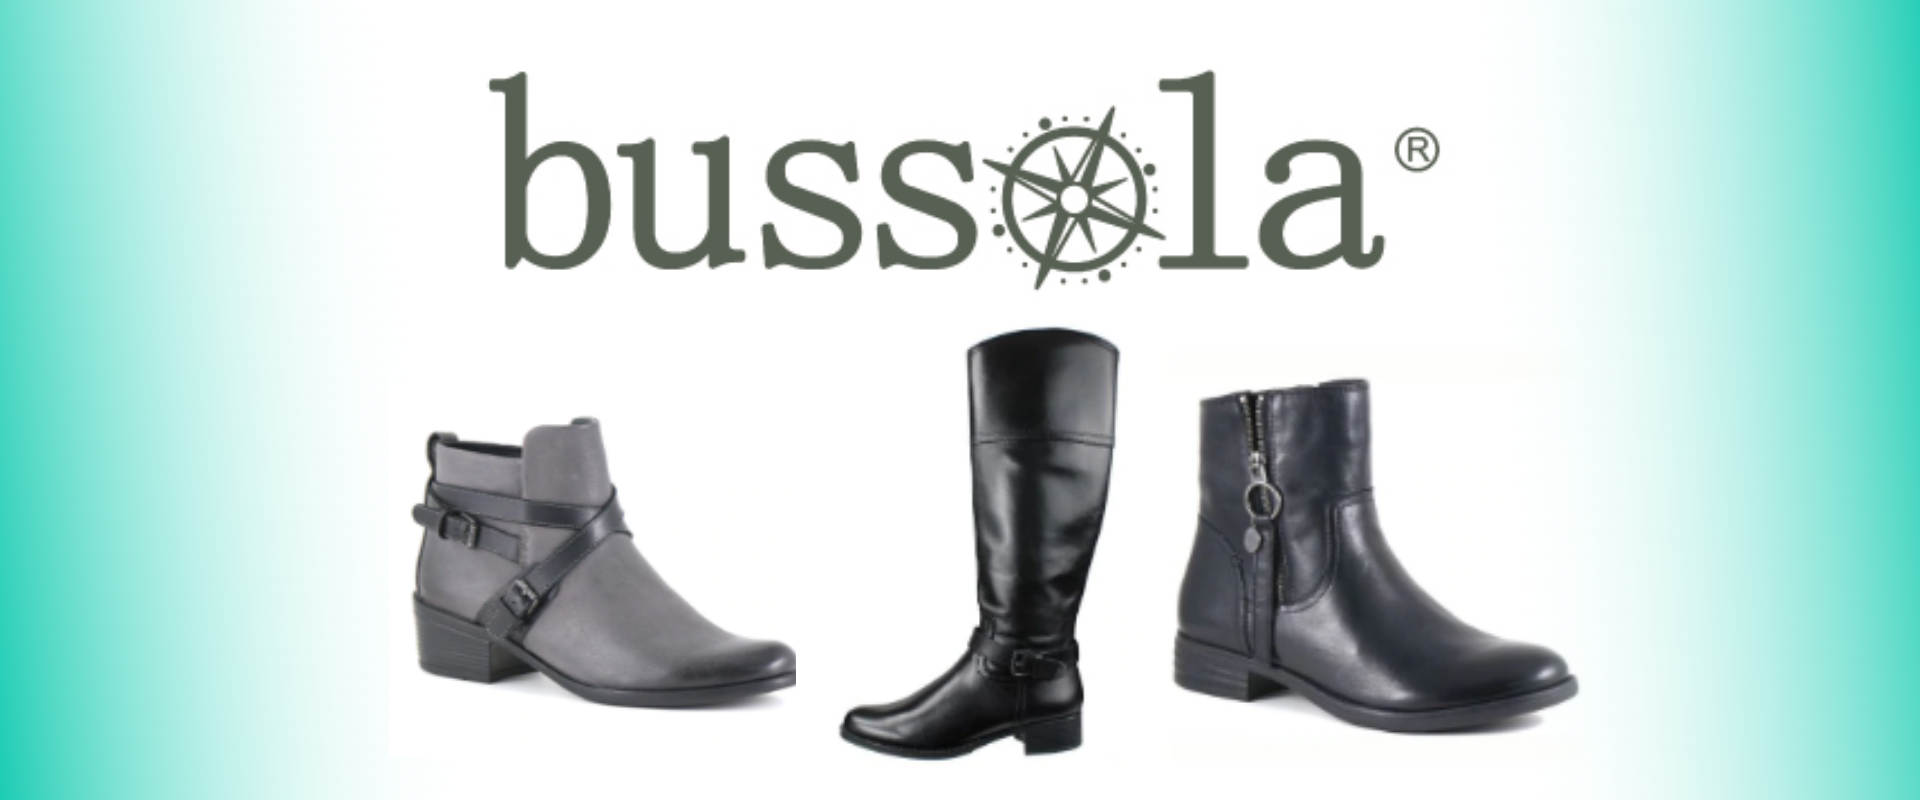 bussola boots